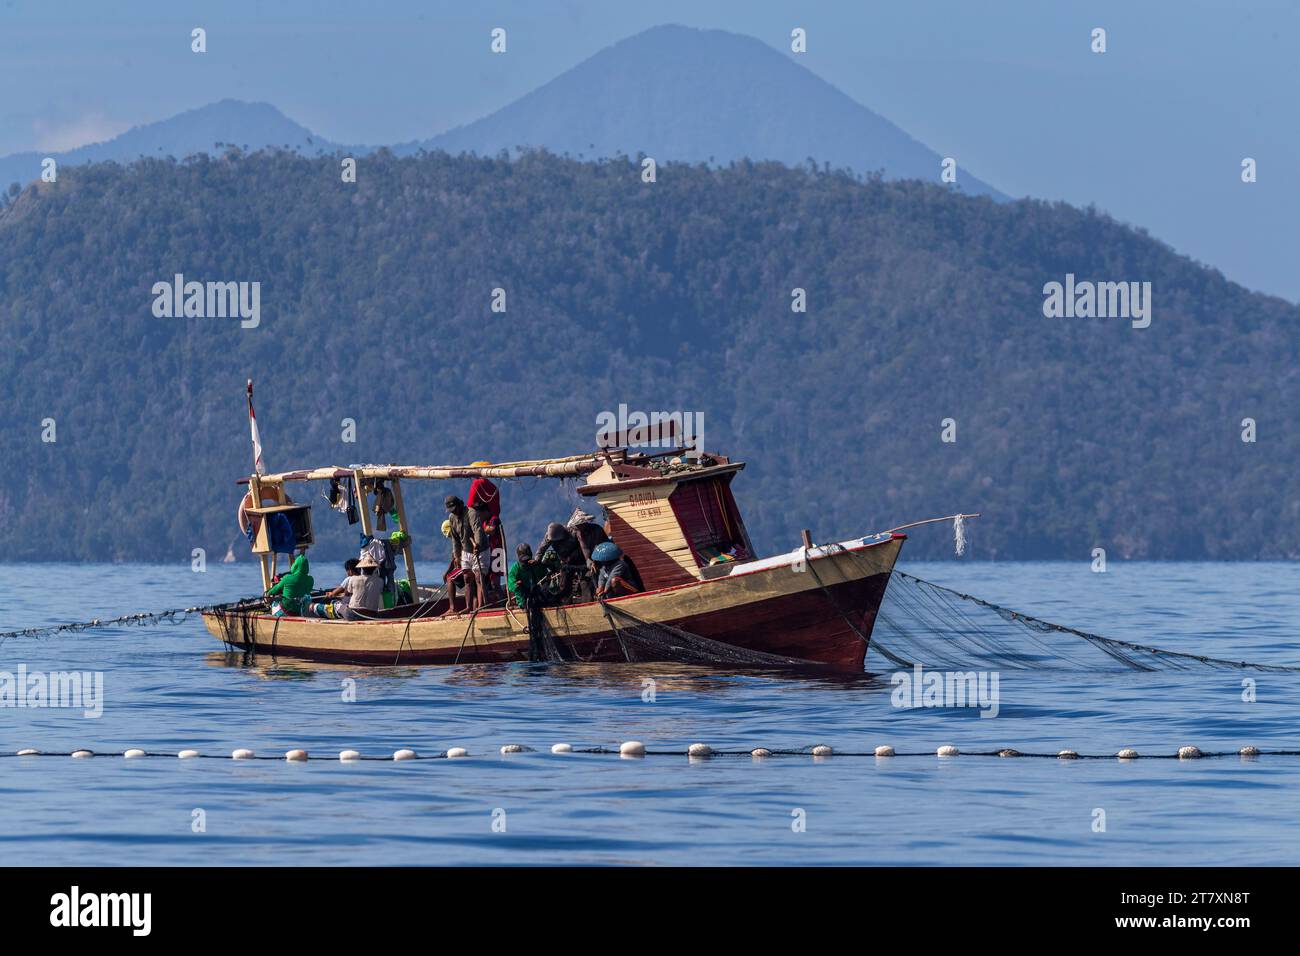 Pescatore di tonno che recupera una rete a circuizione, Bangka Island, al largo della punta nordorientale di Sulawesi, Indonesia, Sud-est asiatico, Asia Foto Stock